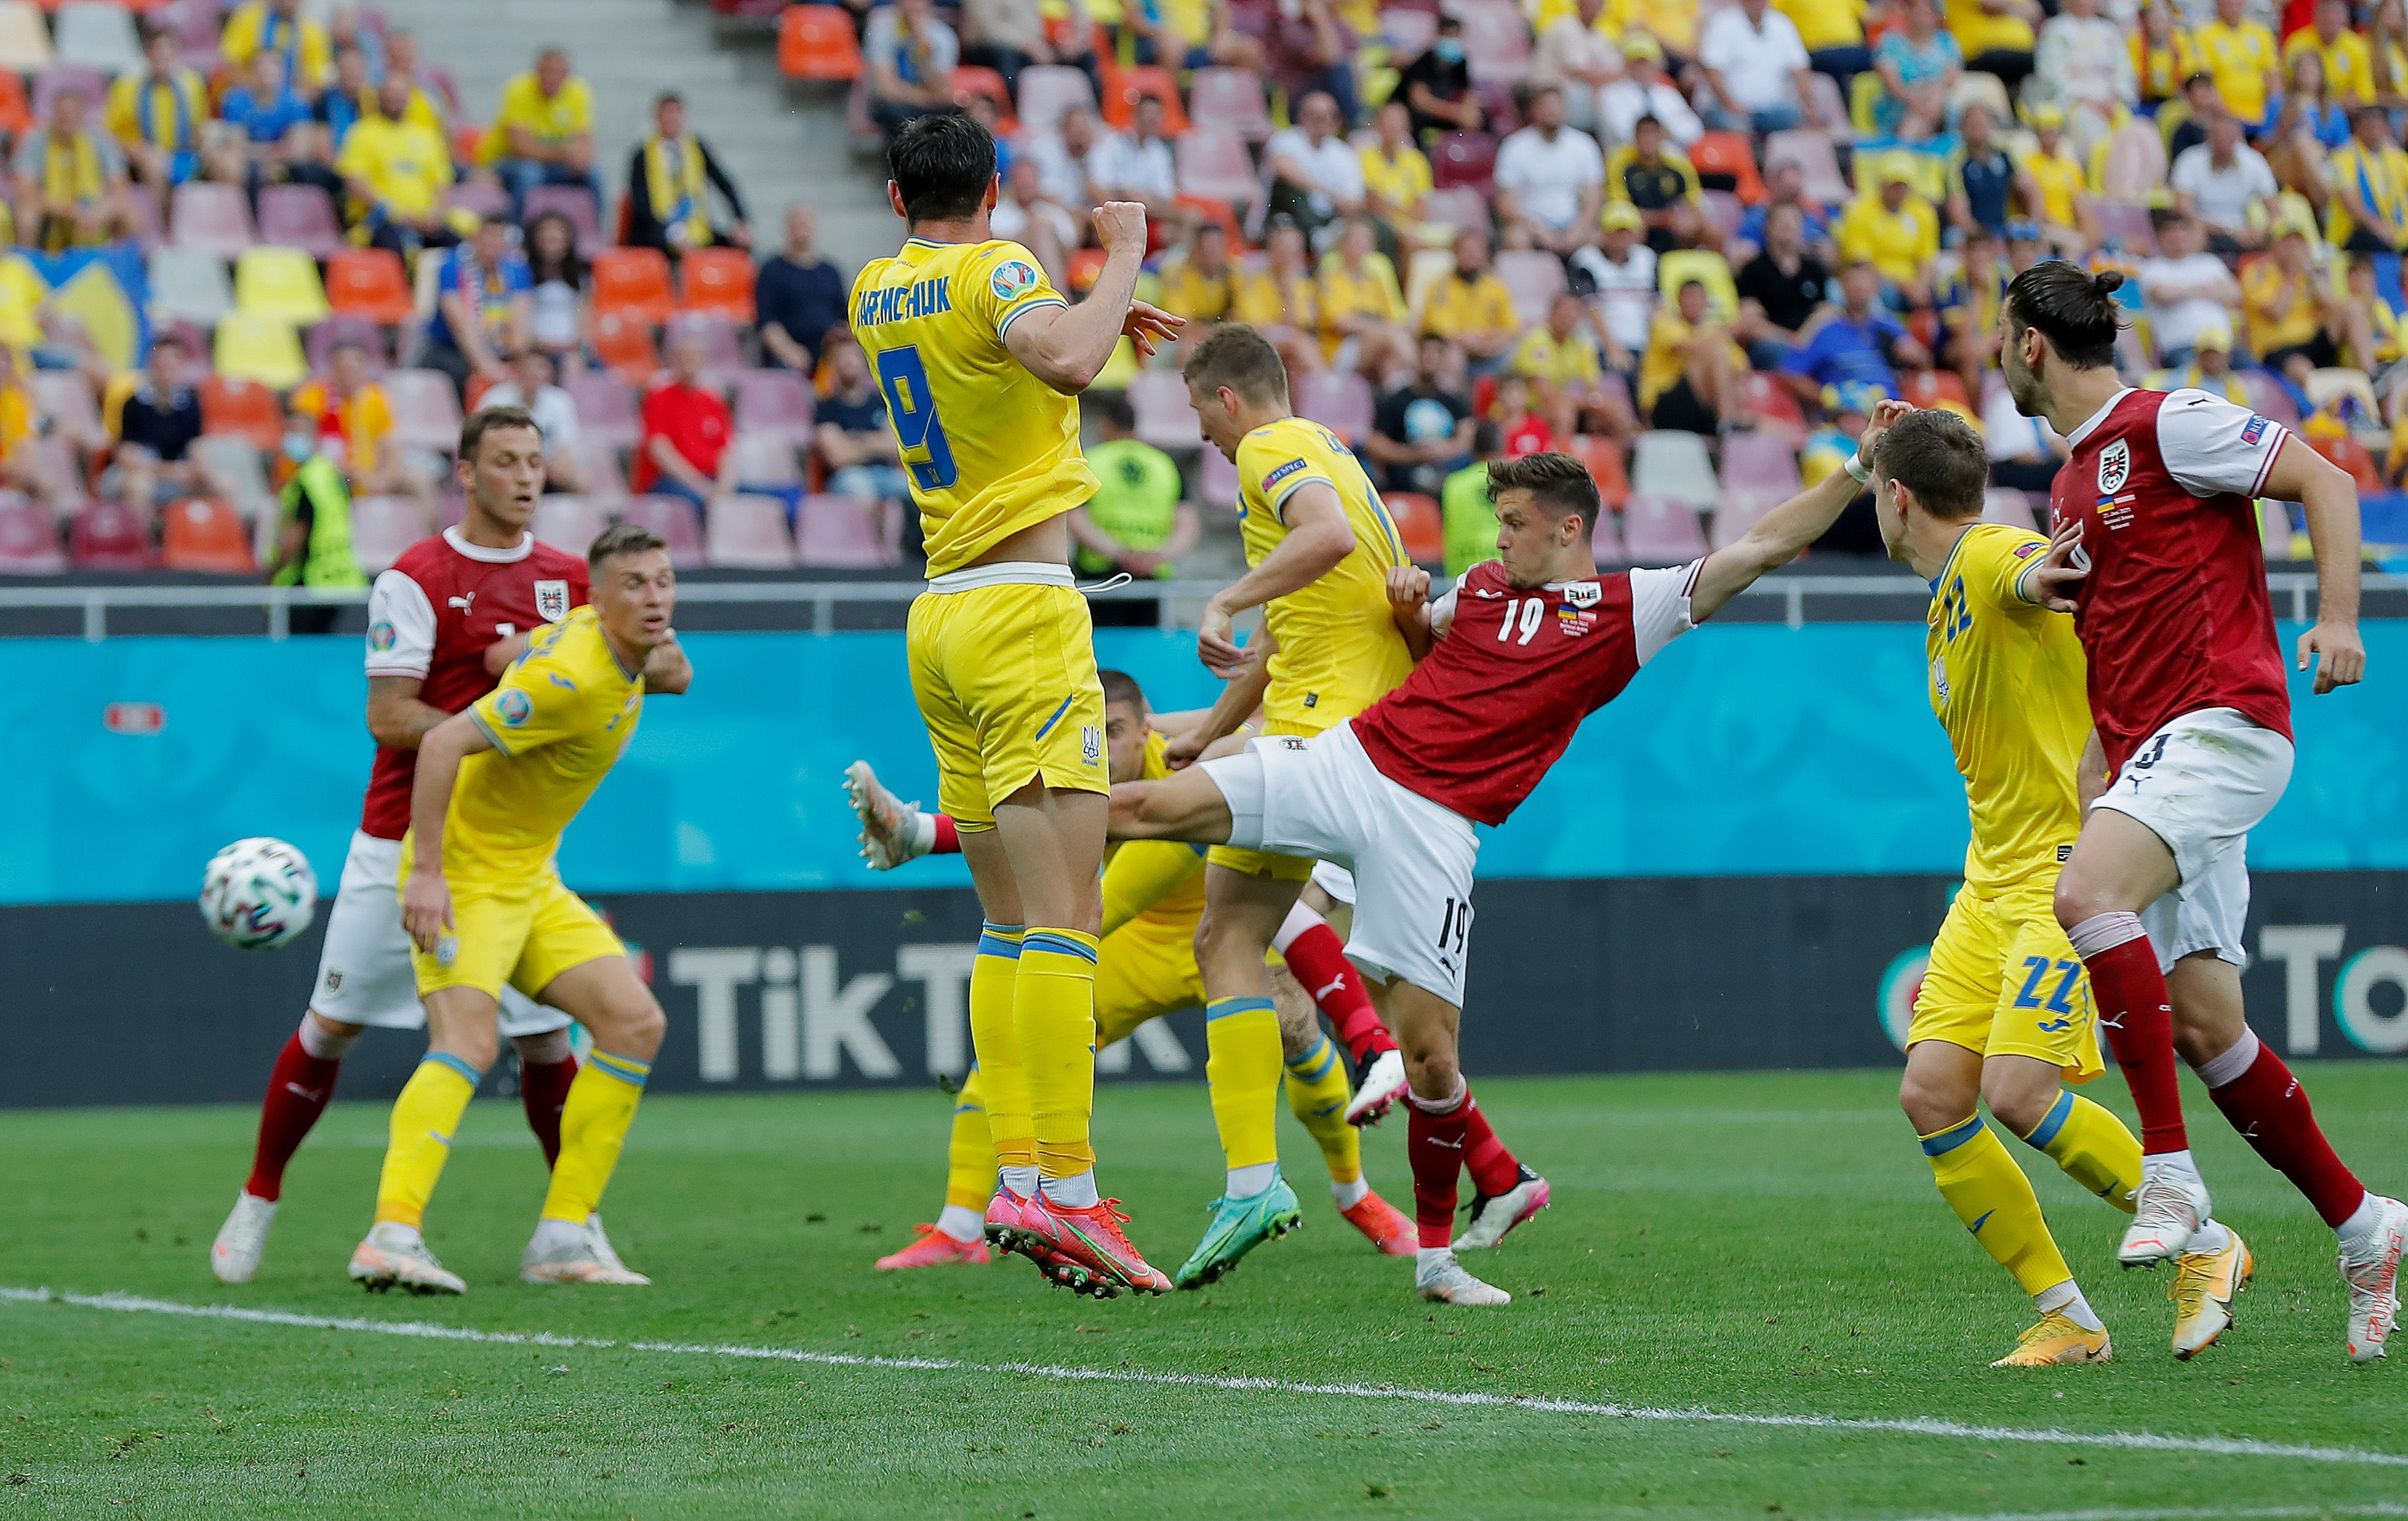 Кристоф Баумгартнер забил гол в матче Украина - Австрия: видео